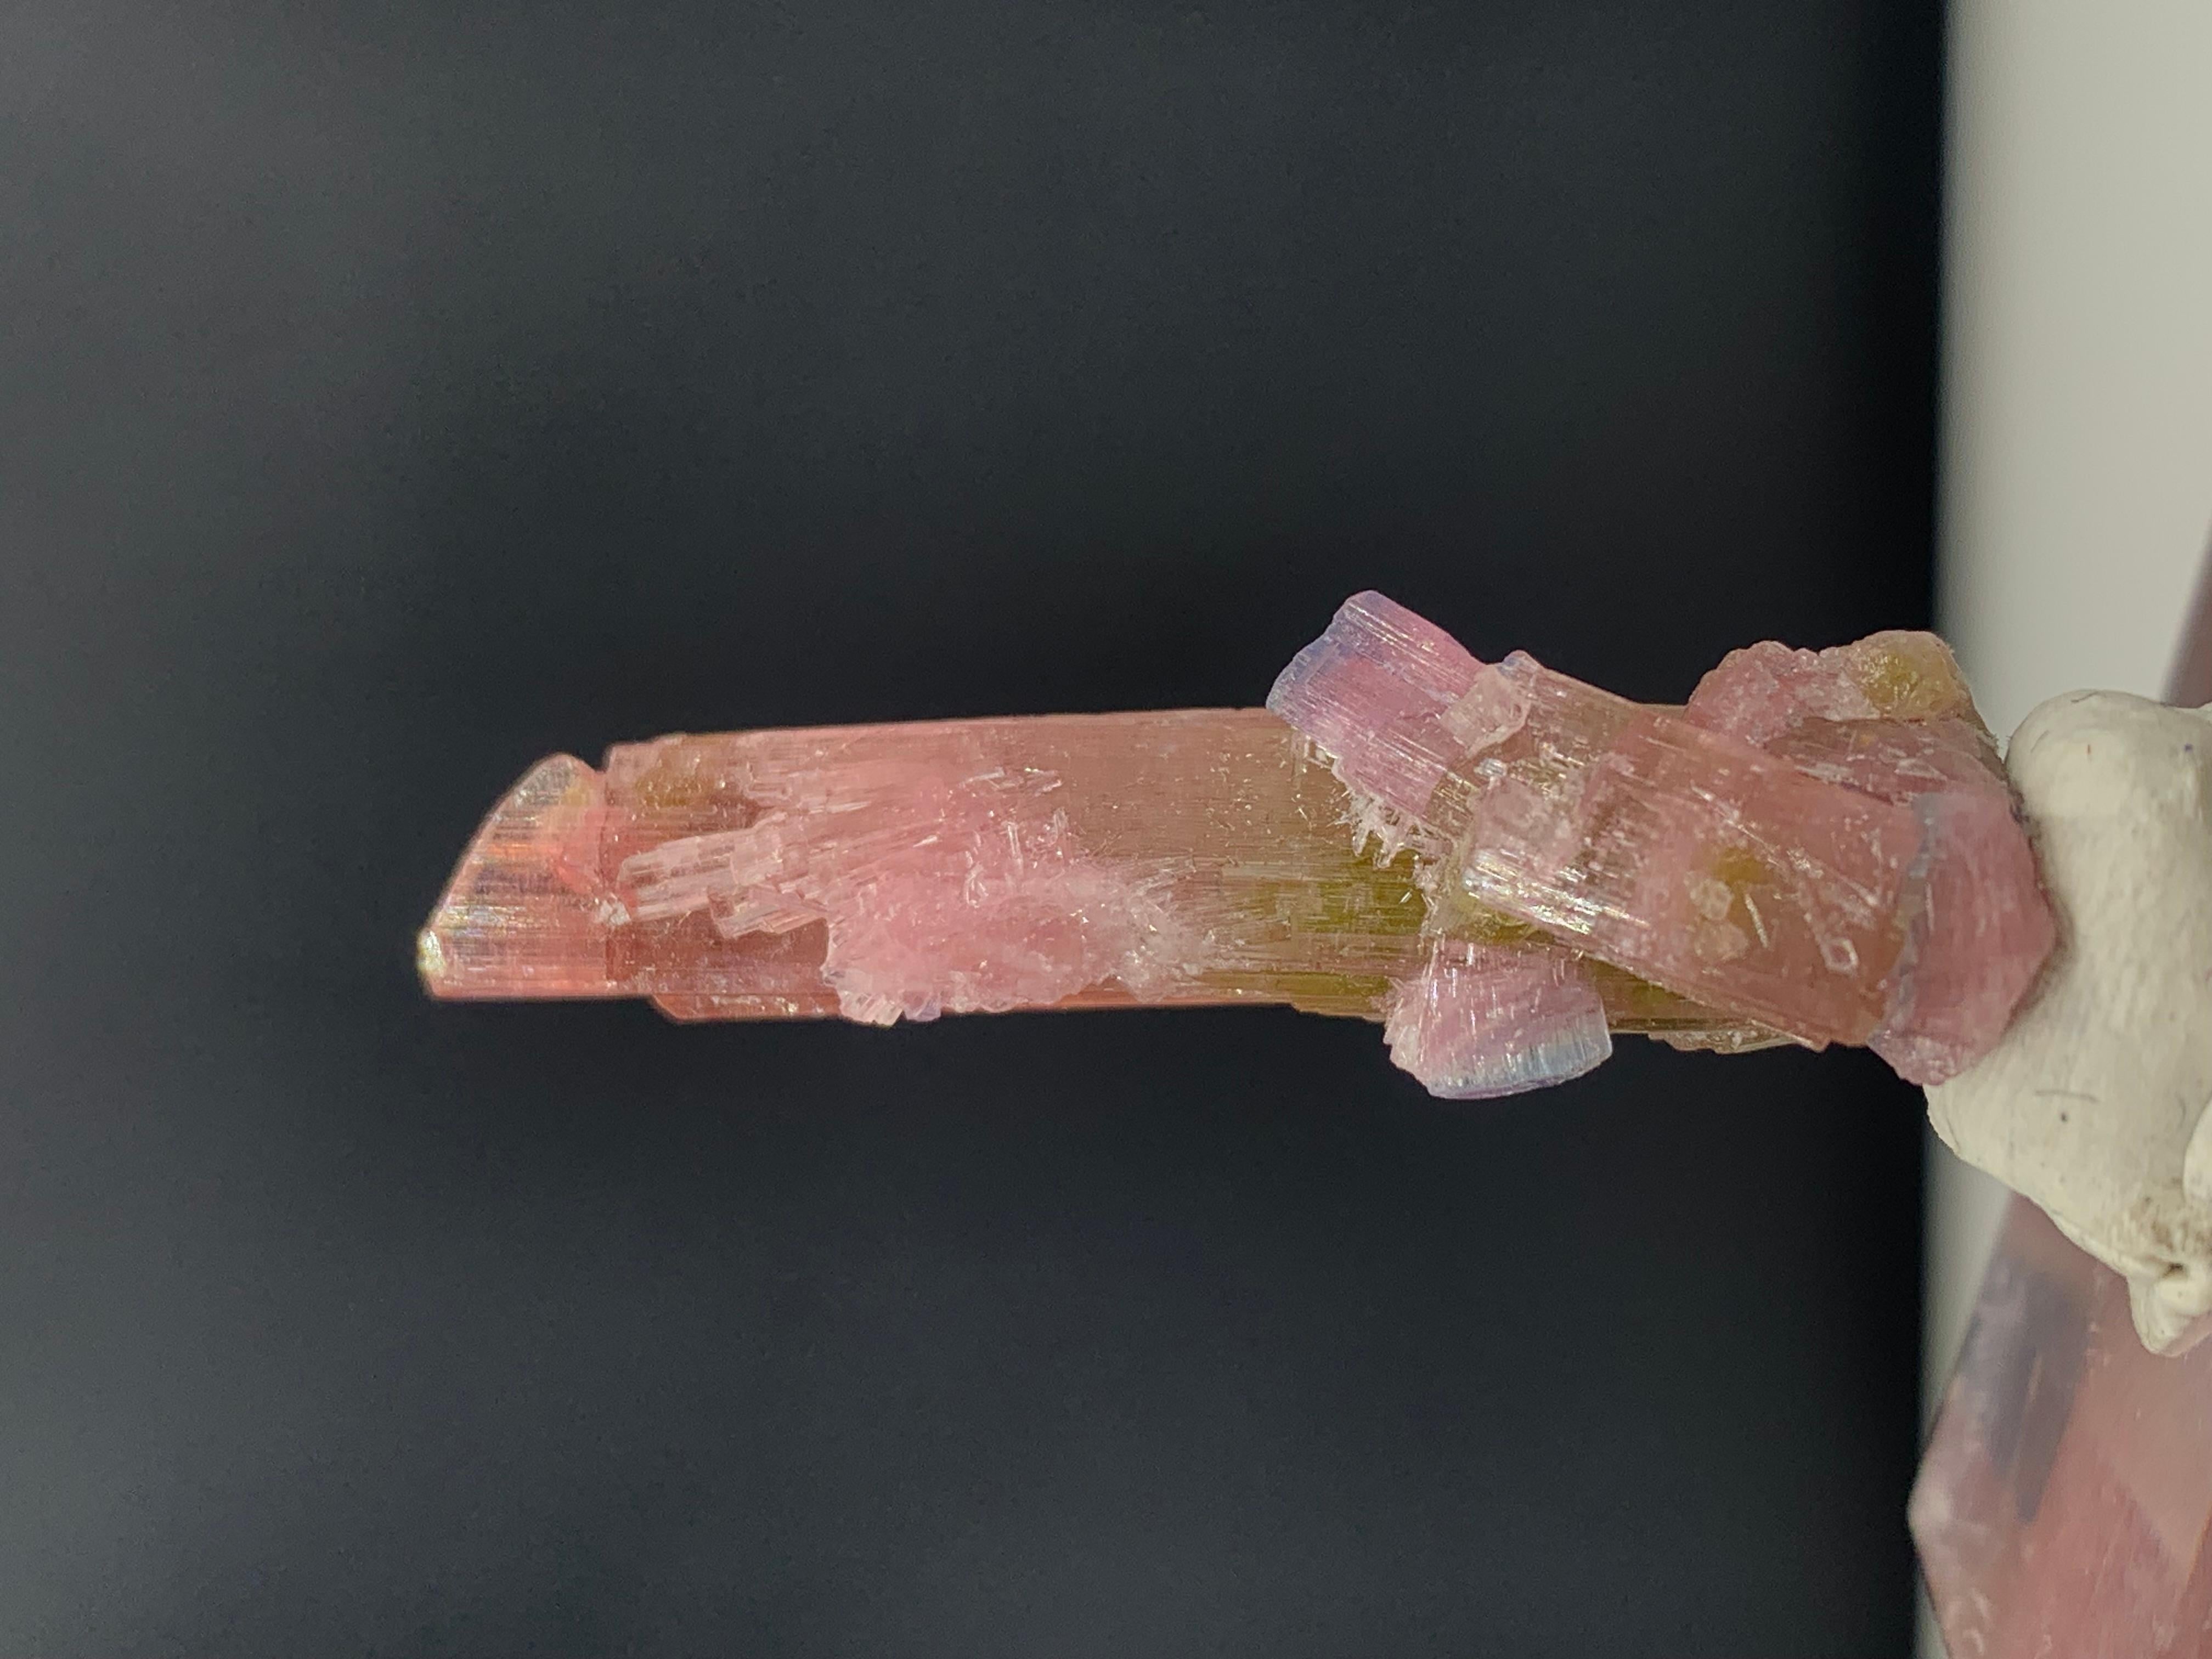 Incroyable cristal de tourmaline bicolore d'Afghanistan
Poids : 35,75 carats
DIMENSIONS : 3,9 x 1,9 x 1 cm
ORIGINE : Afghanistan
COULEUR : Rose et vert
TRAITEMENT : Aucun

La tourmaline est une pierre précieuse extrêmement populaire ; le nom